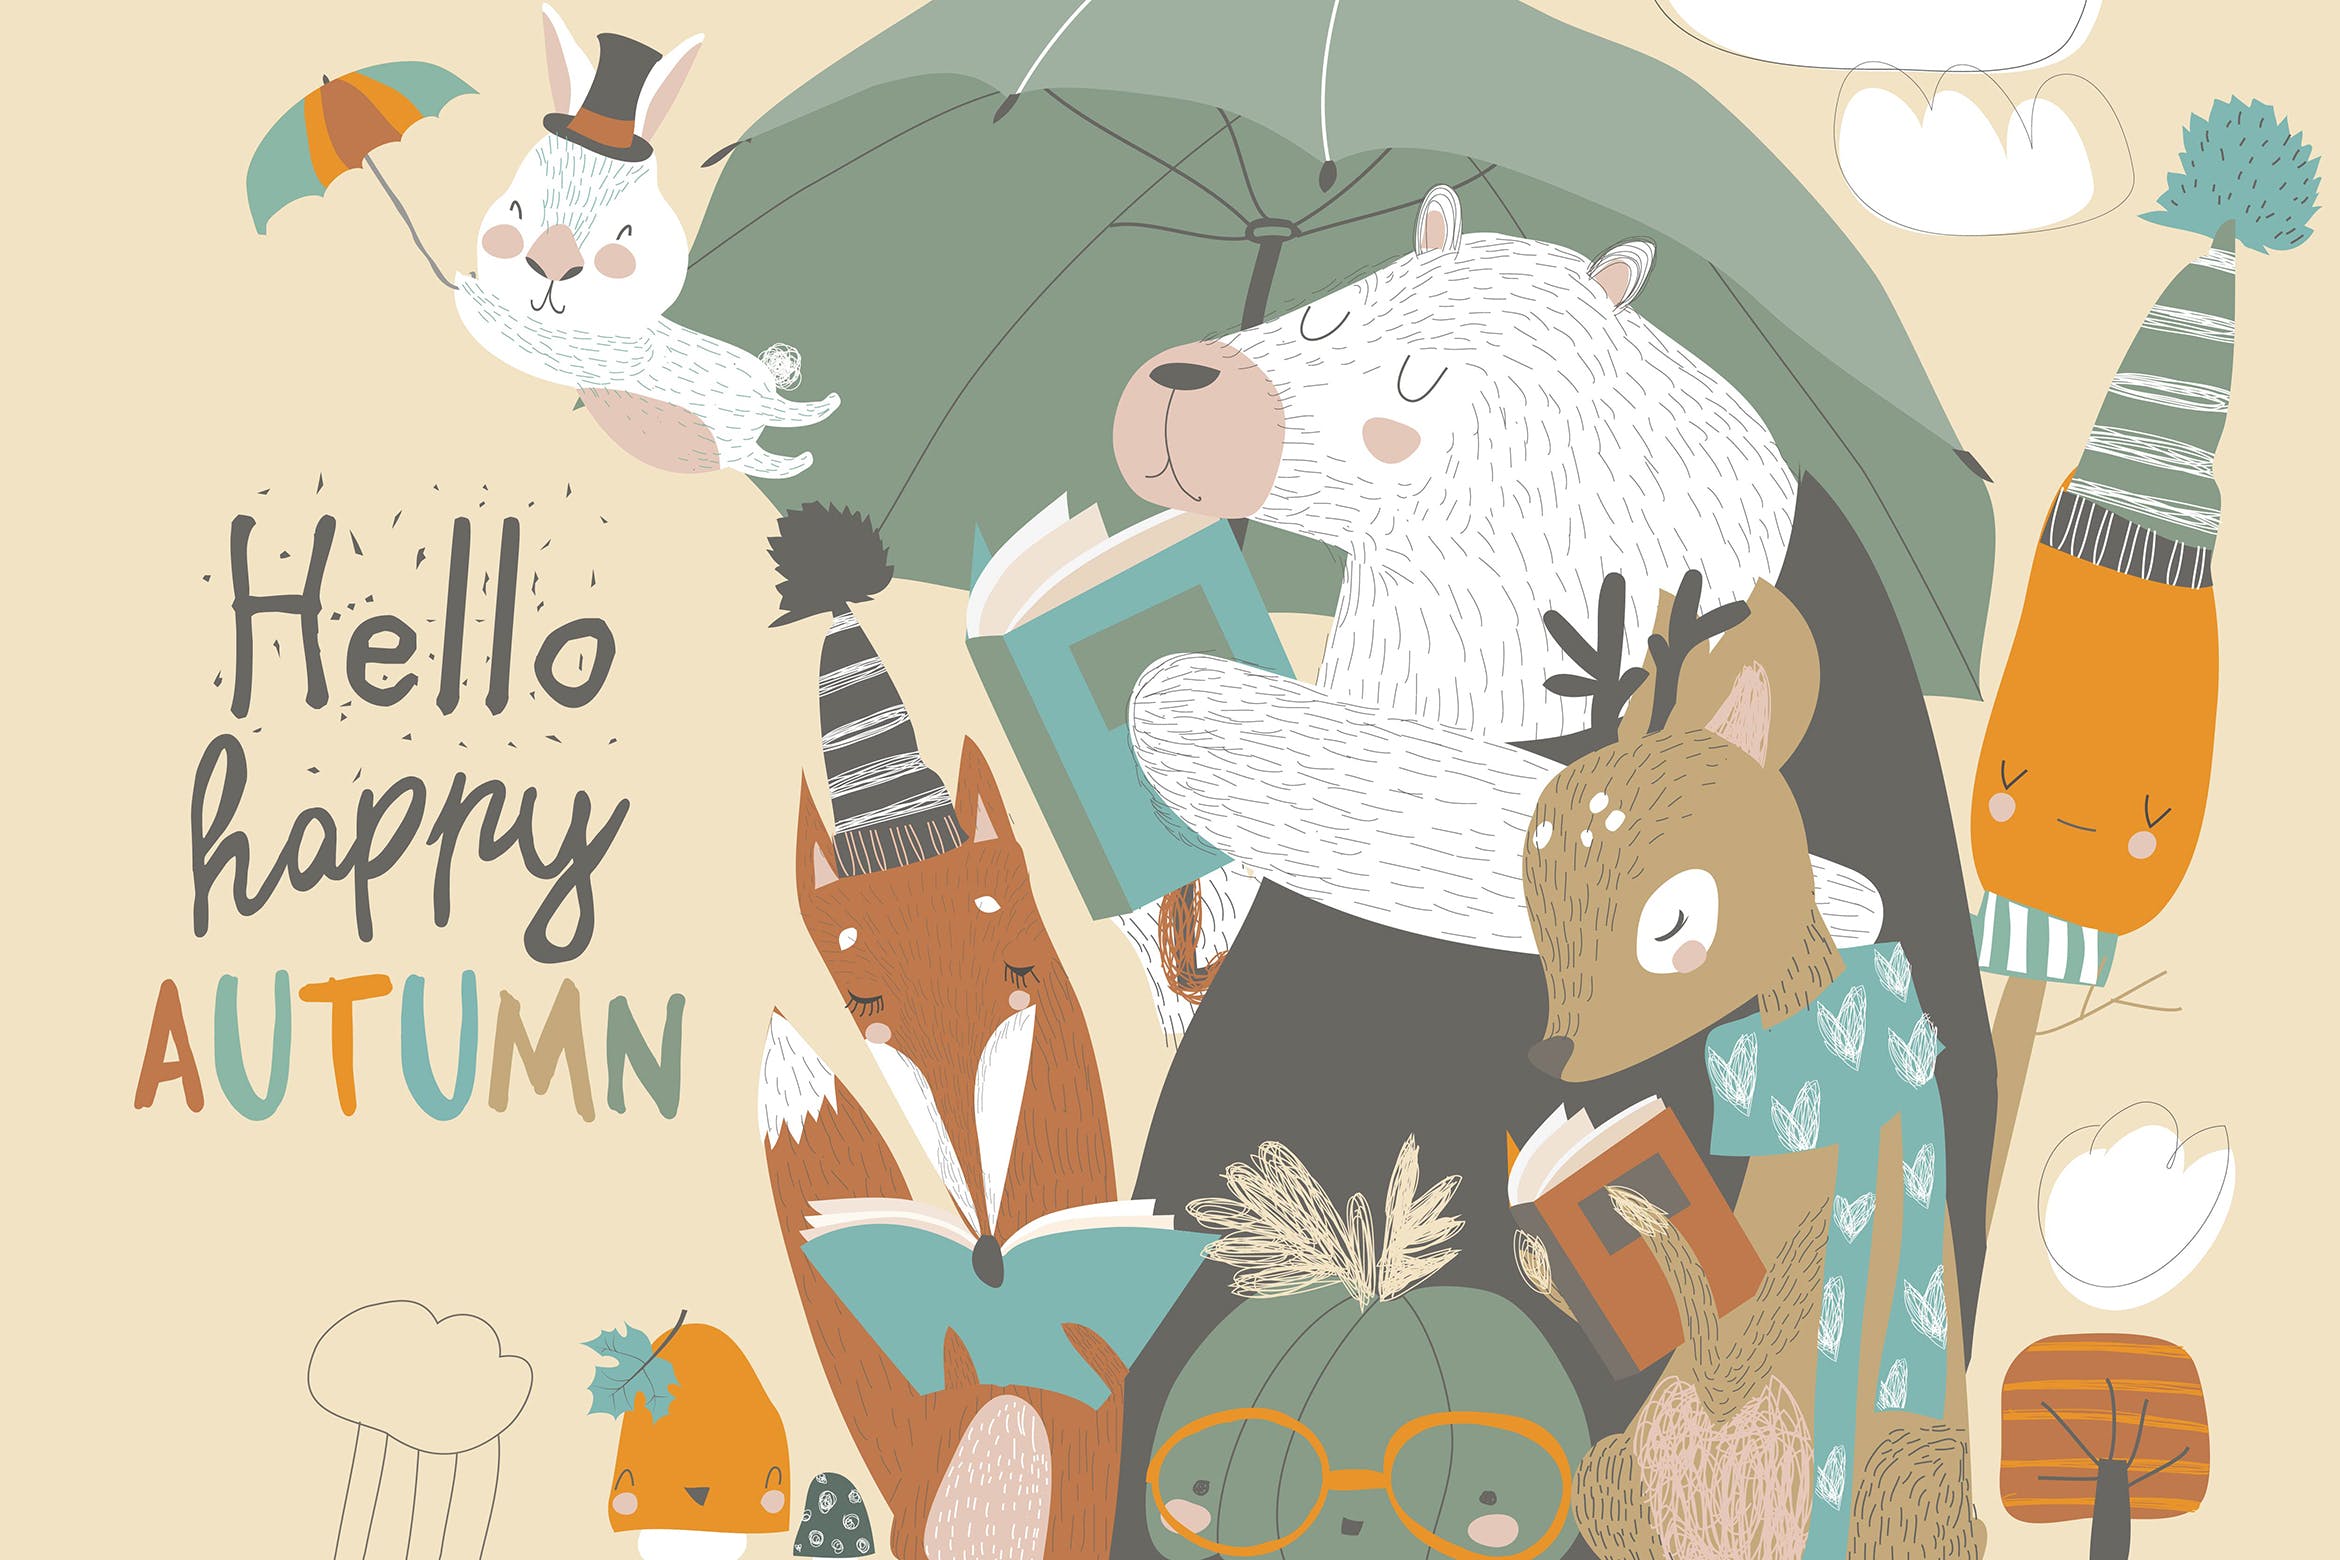 可爱的动物阅读场景第一素材精选手绘插画矢量素材 Funny animals read books under umbrella. Autumn ti插图